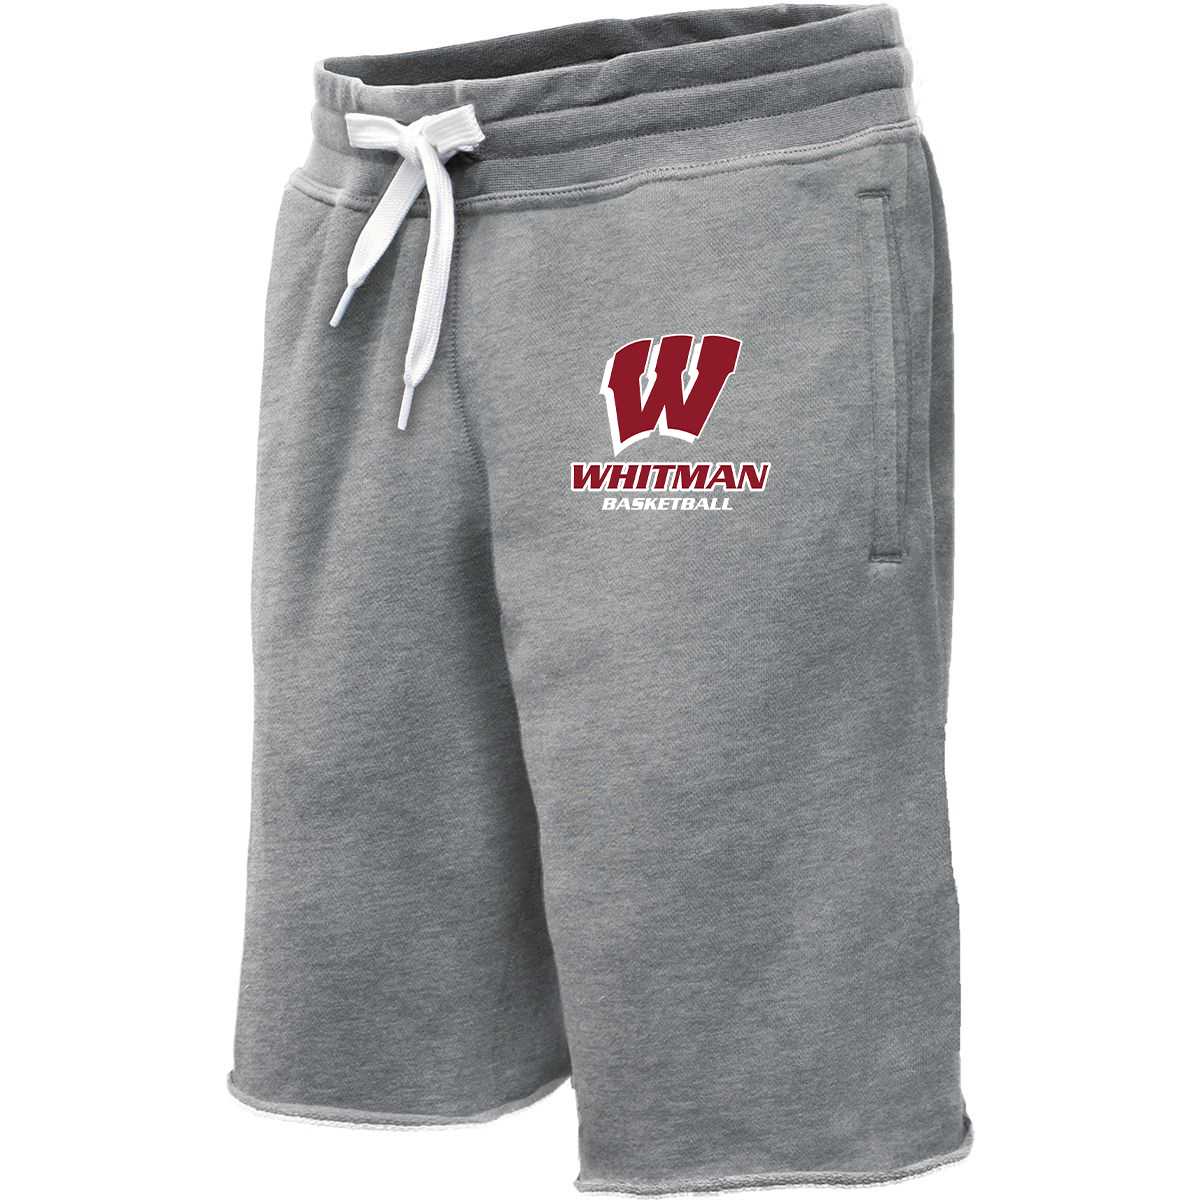 Whitman Basketball Sweatshort